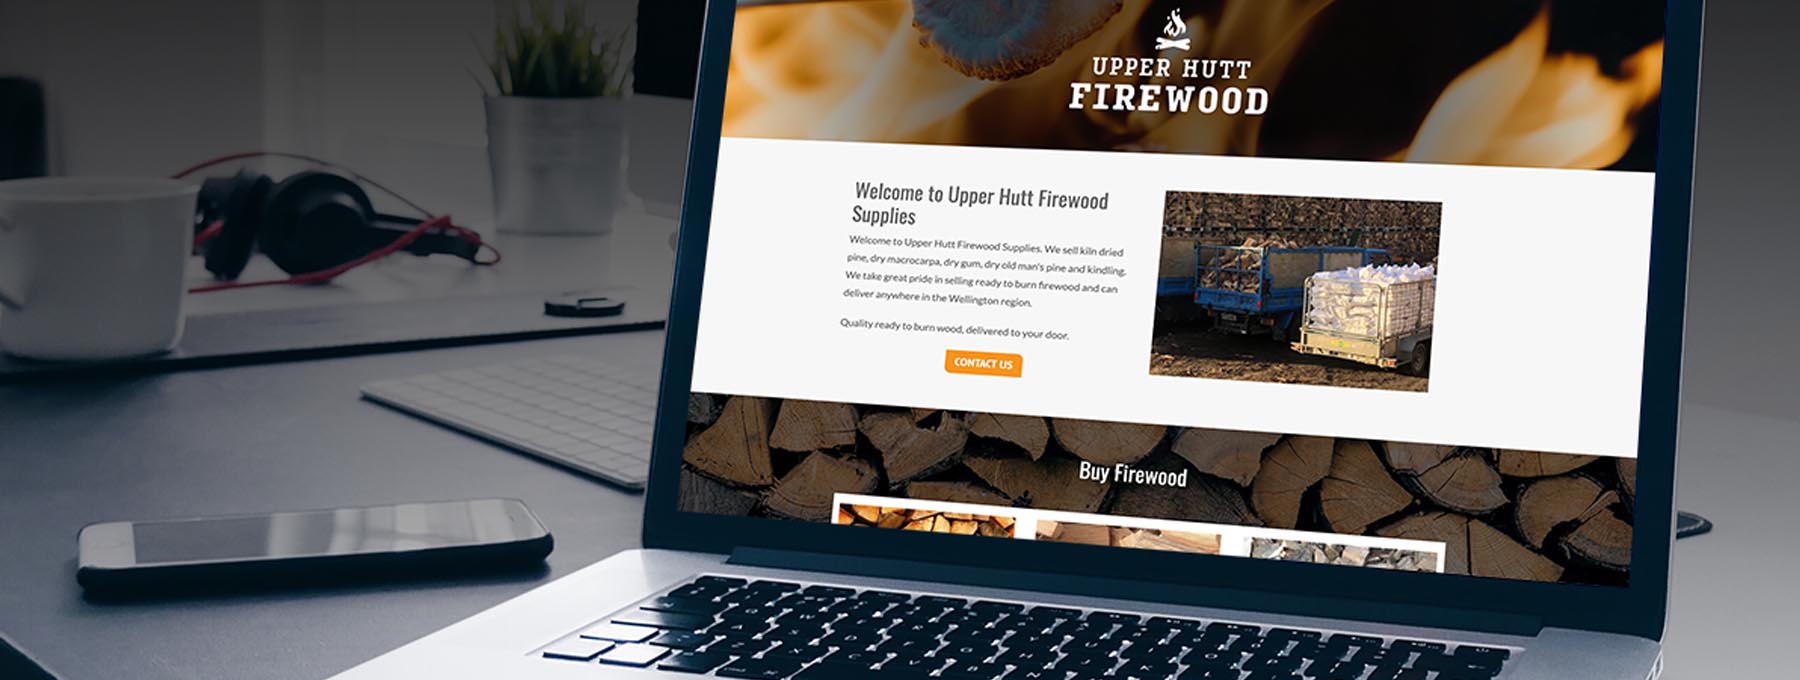 Upper Hutt Firewood Website